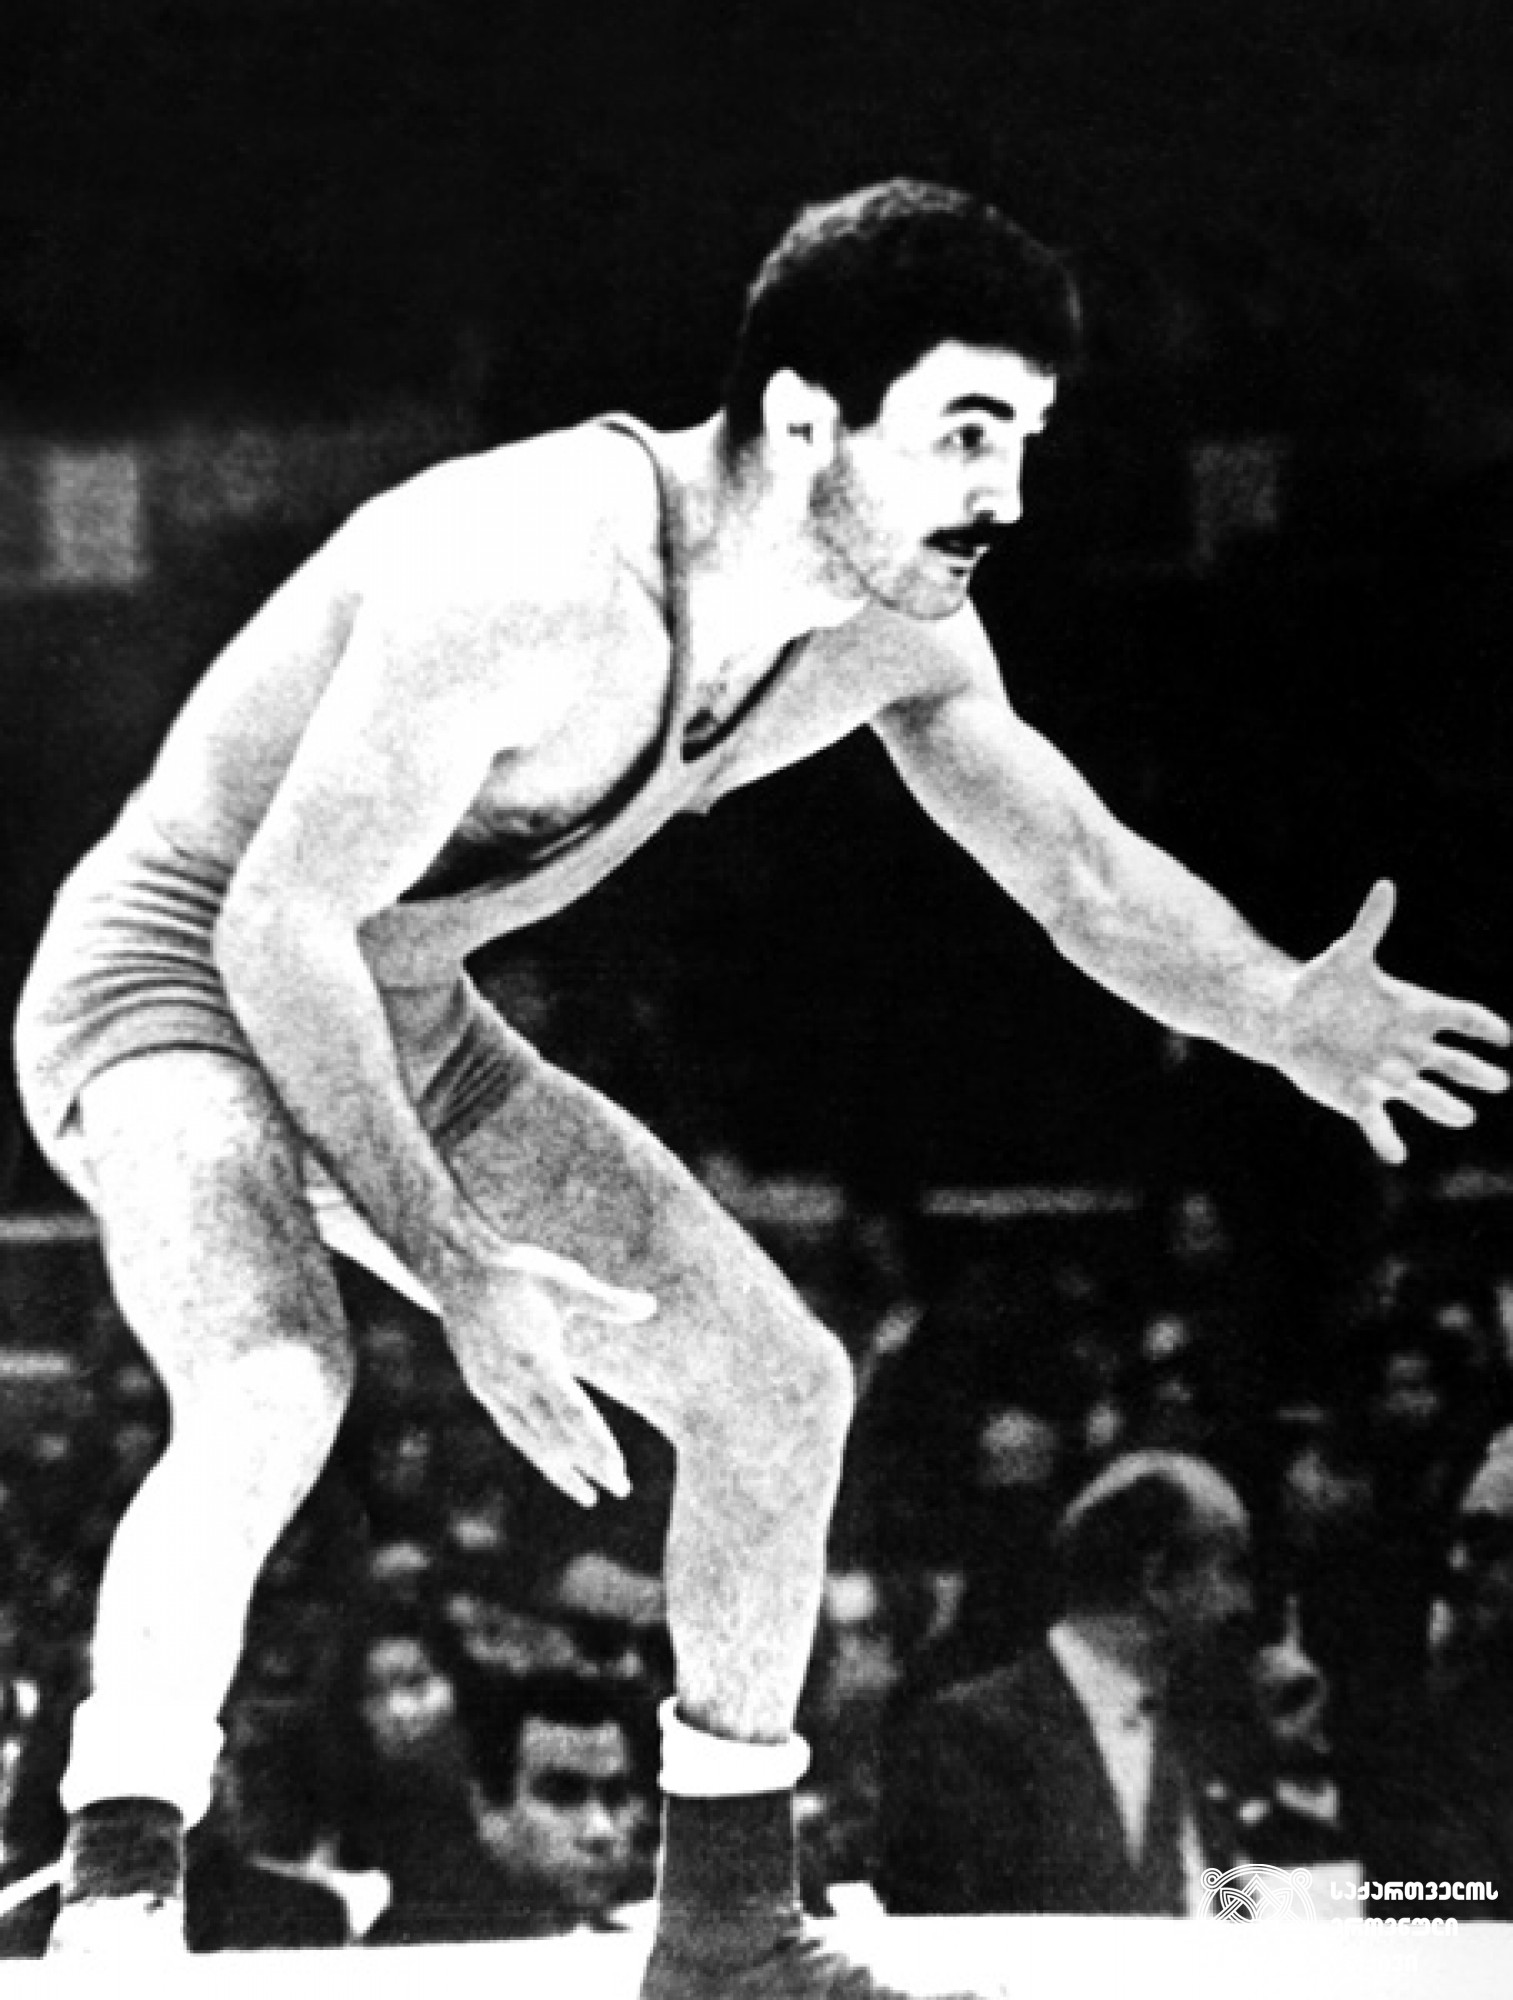 ნოდარ ხოხაშვილი. <br>
XVIII ოლიმპიური თამაშების მესამე პრიზიორი თავისუფალ ჭიდაობაში (1964 წელი, ტოკიო). <br>
ფოტო საქართველოს ეროვნული ოლიმპიური კომიტეტის ვებგვერდიდან. <br>
Nodar Khokhashvili. <br>
Third-prize winner of the XVIII Olympic Games in Wrestling Freestyle (1964, Tokyo). <br>
Photo from the web-site of the Georgian National Olympic Committee.